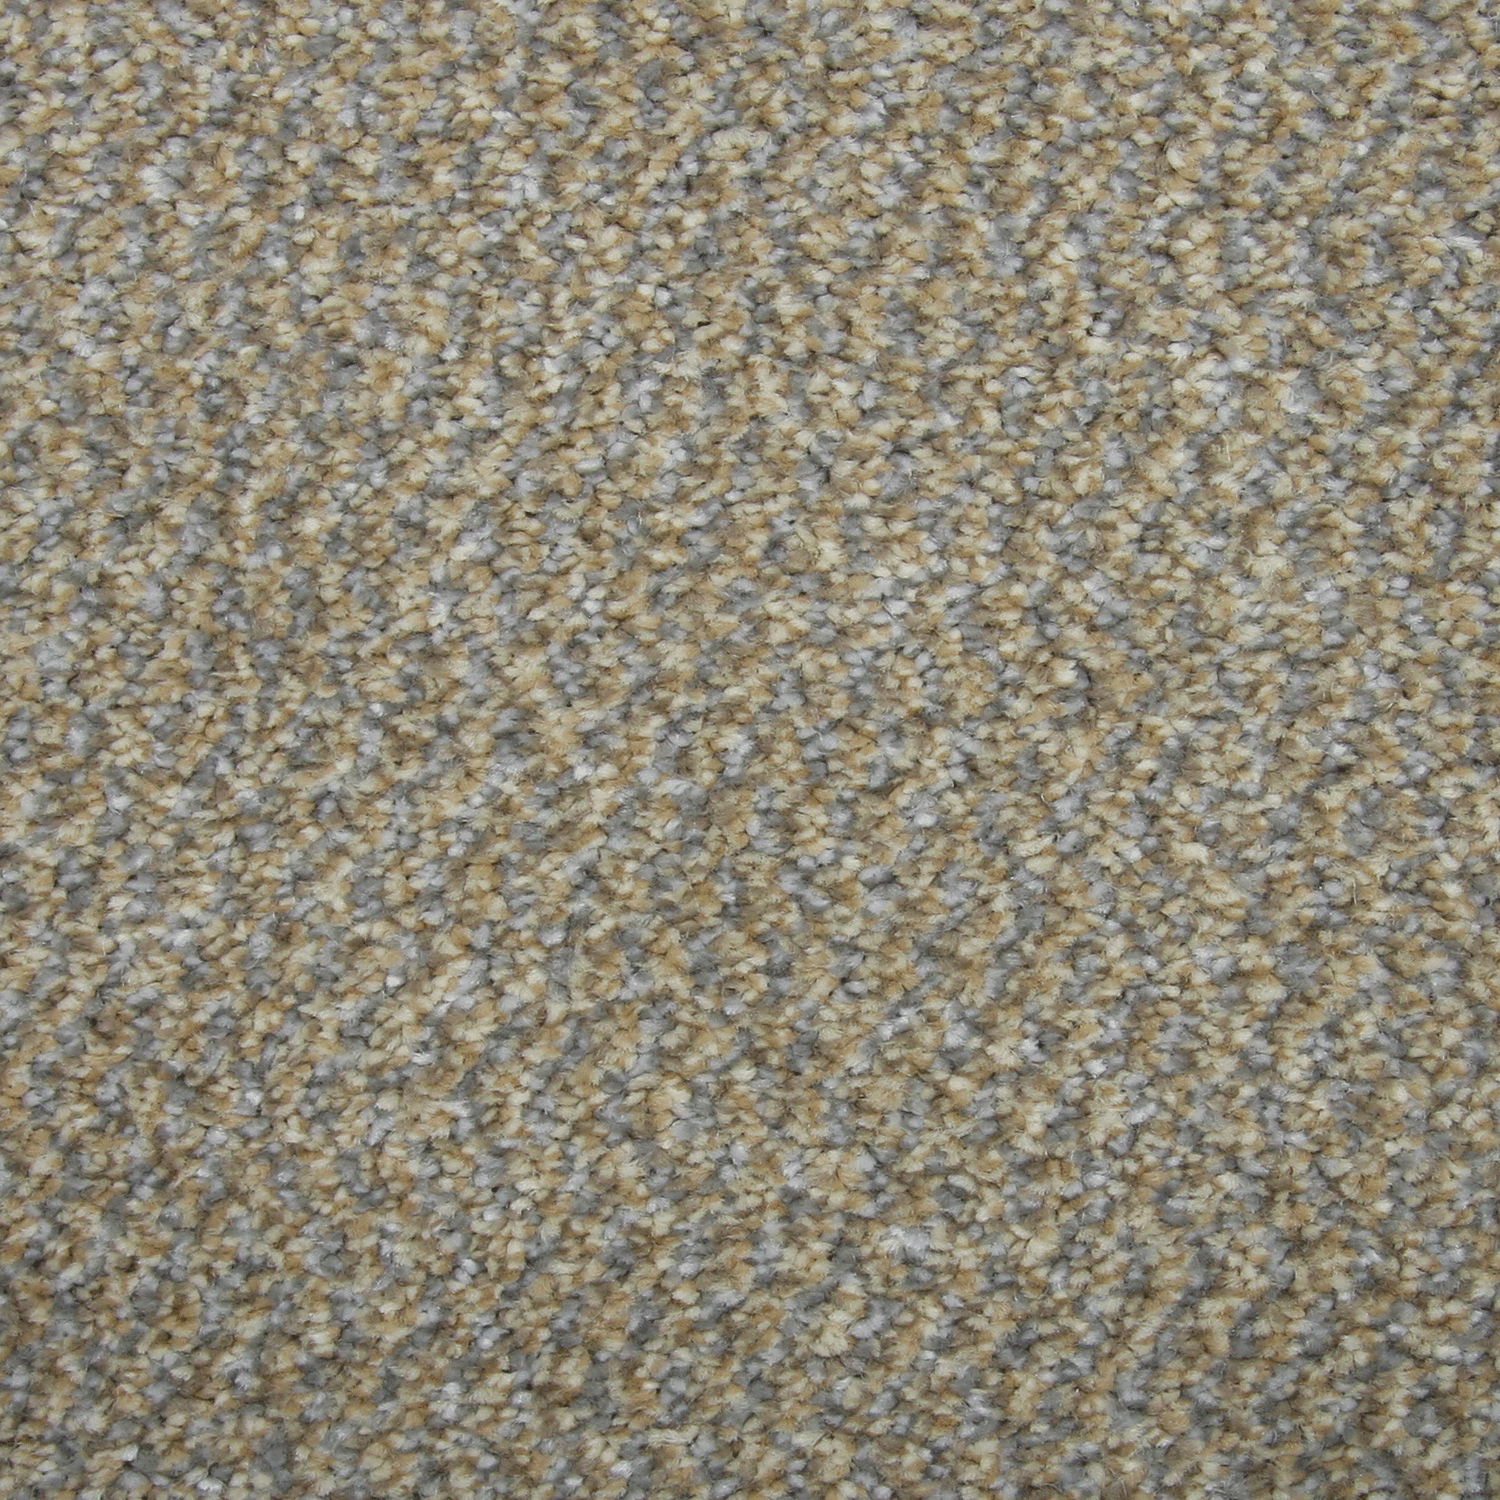 Carpet name: Richmond Tweed Latte